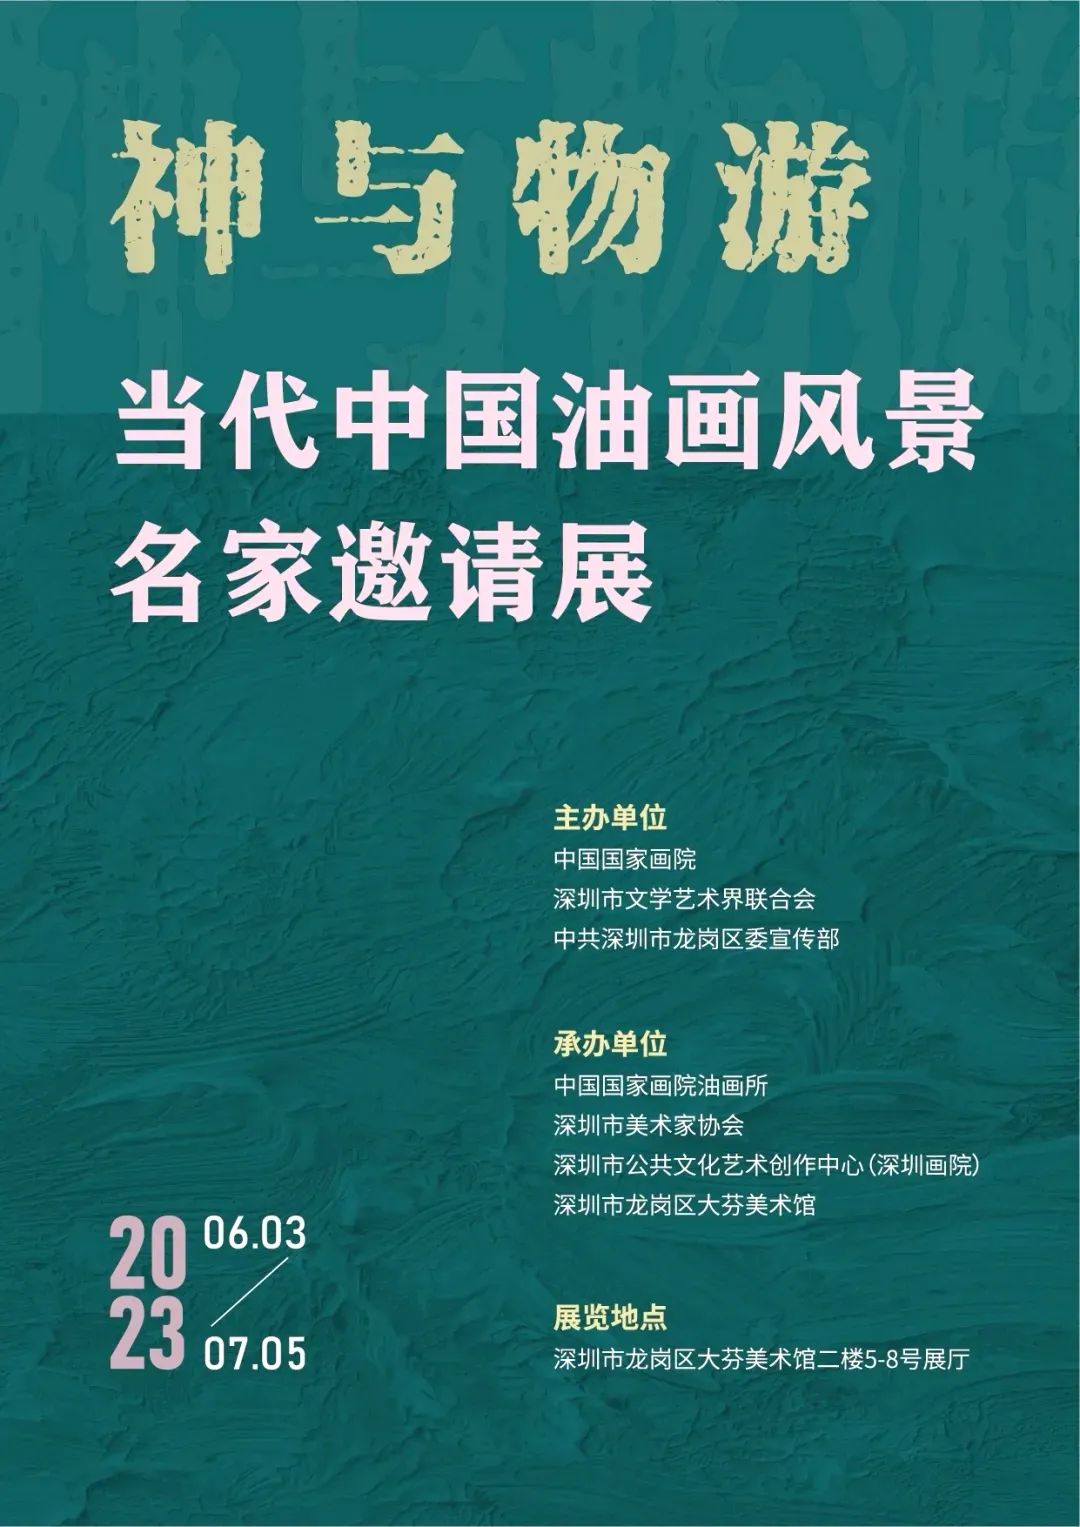 神与物游——当代中国油画风景名家邀请展开展